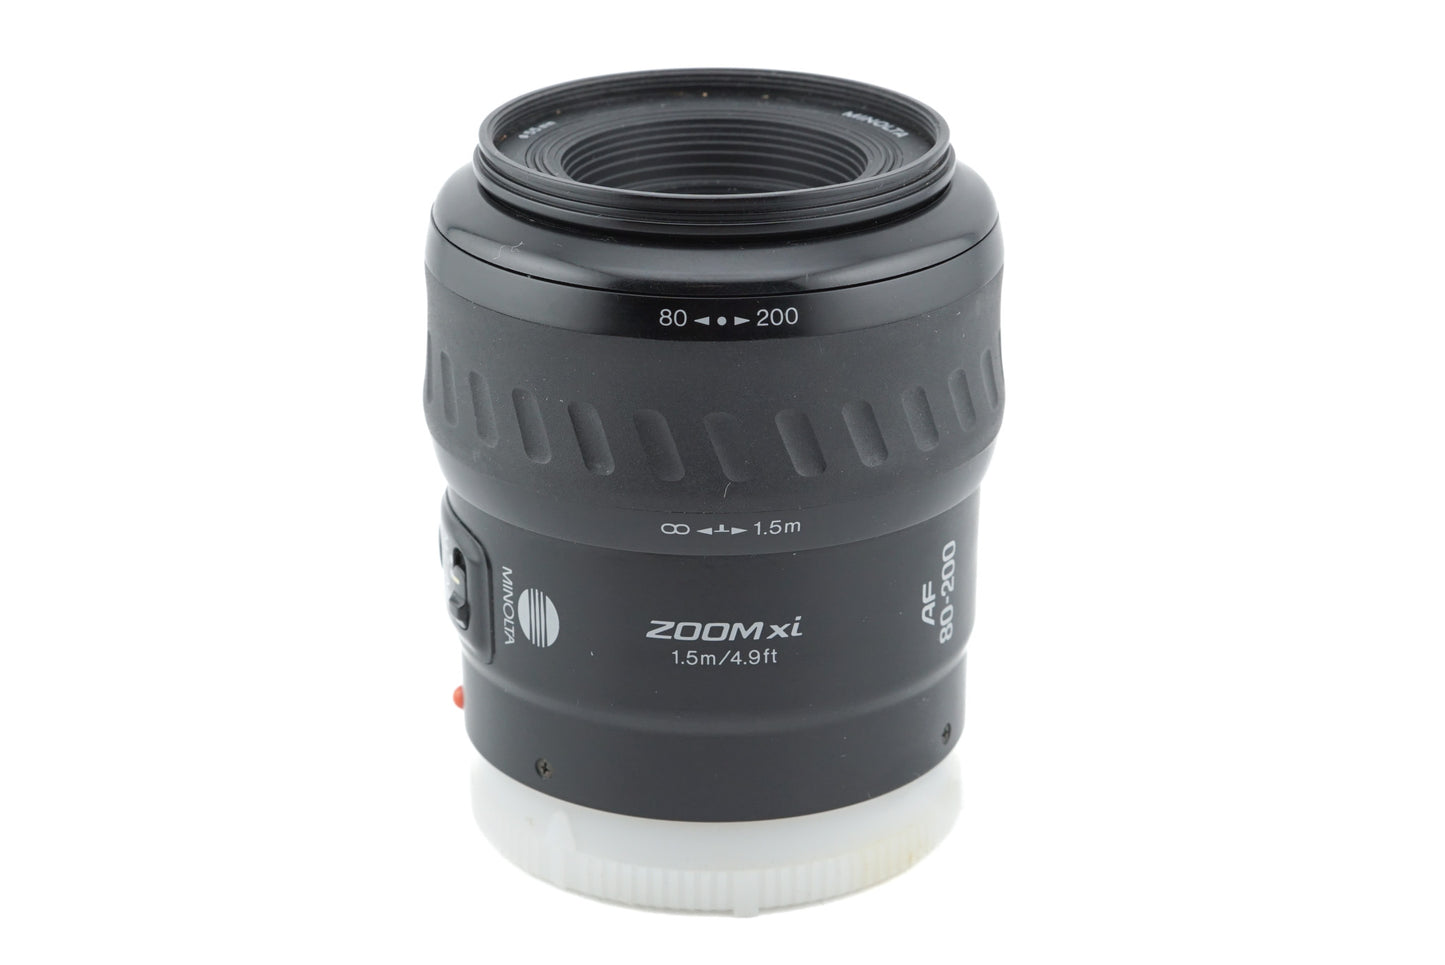 Minolta 80-200mm f4.5-5.6 AF Zoom Xi - Lens